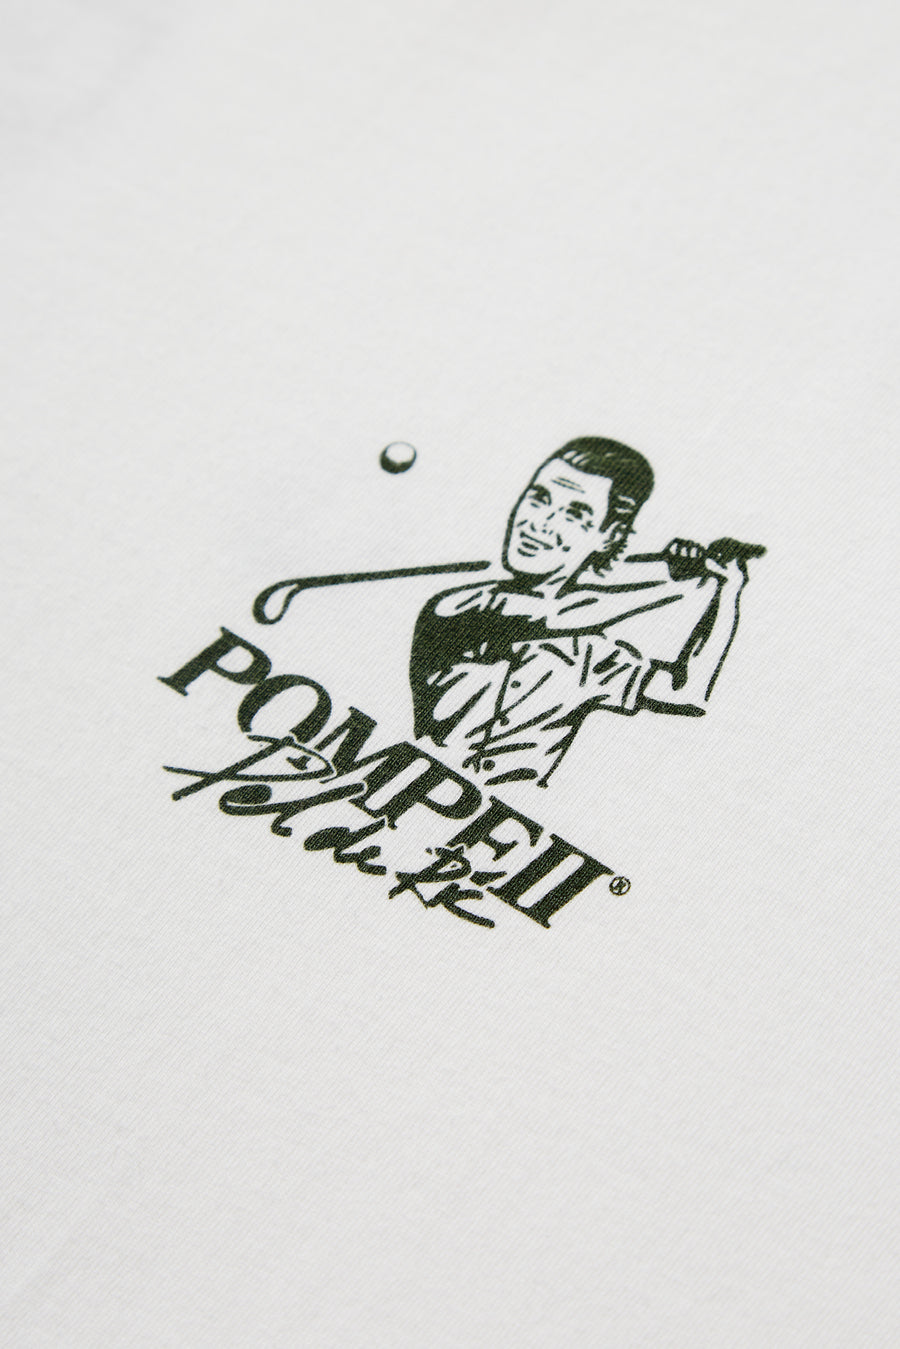 Pompeii x Pel de Ric | Camiseta Golf Graphic Tee